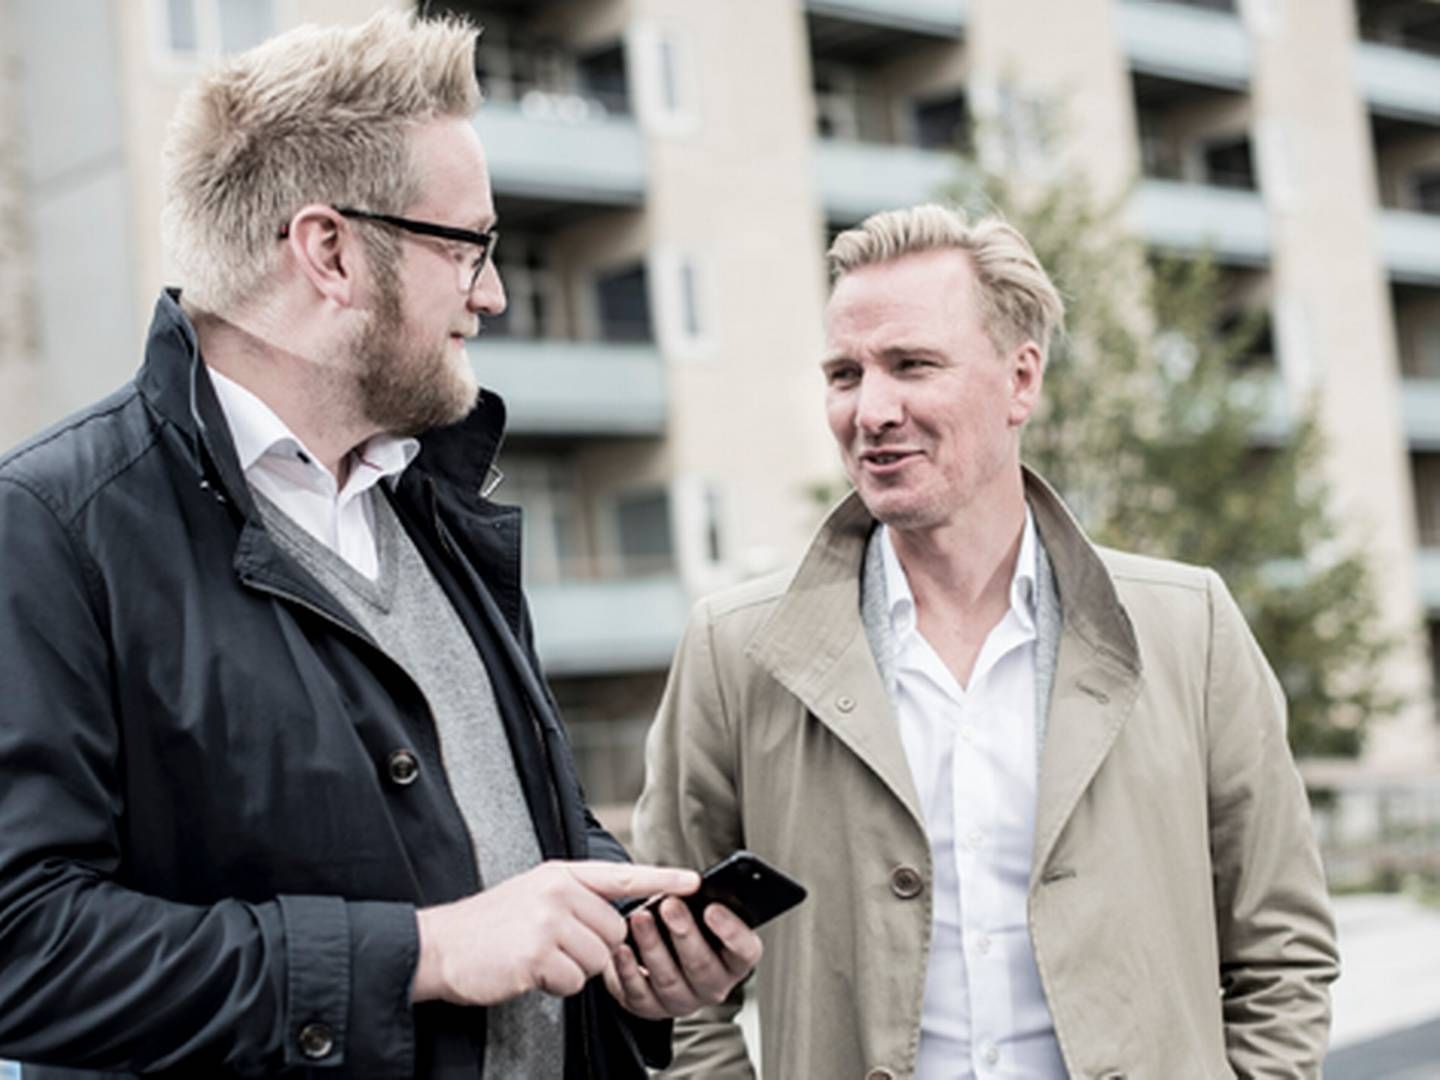 Fra venstre ses Ordrestyring.dk's stifter Carsten Rasmussen, og ved siden af står ny adm. direktør i virksomheden Tomy Hahn Sørensen. | Foto: PR